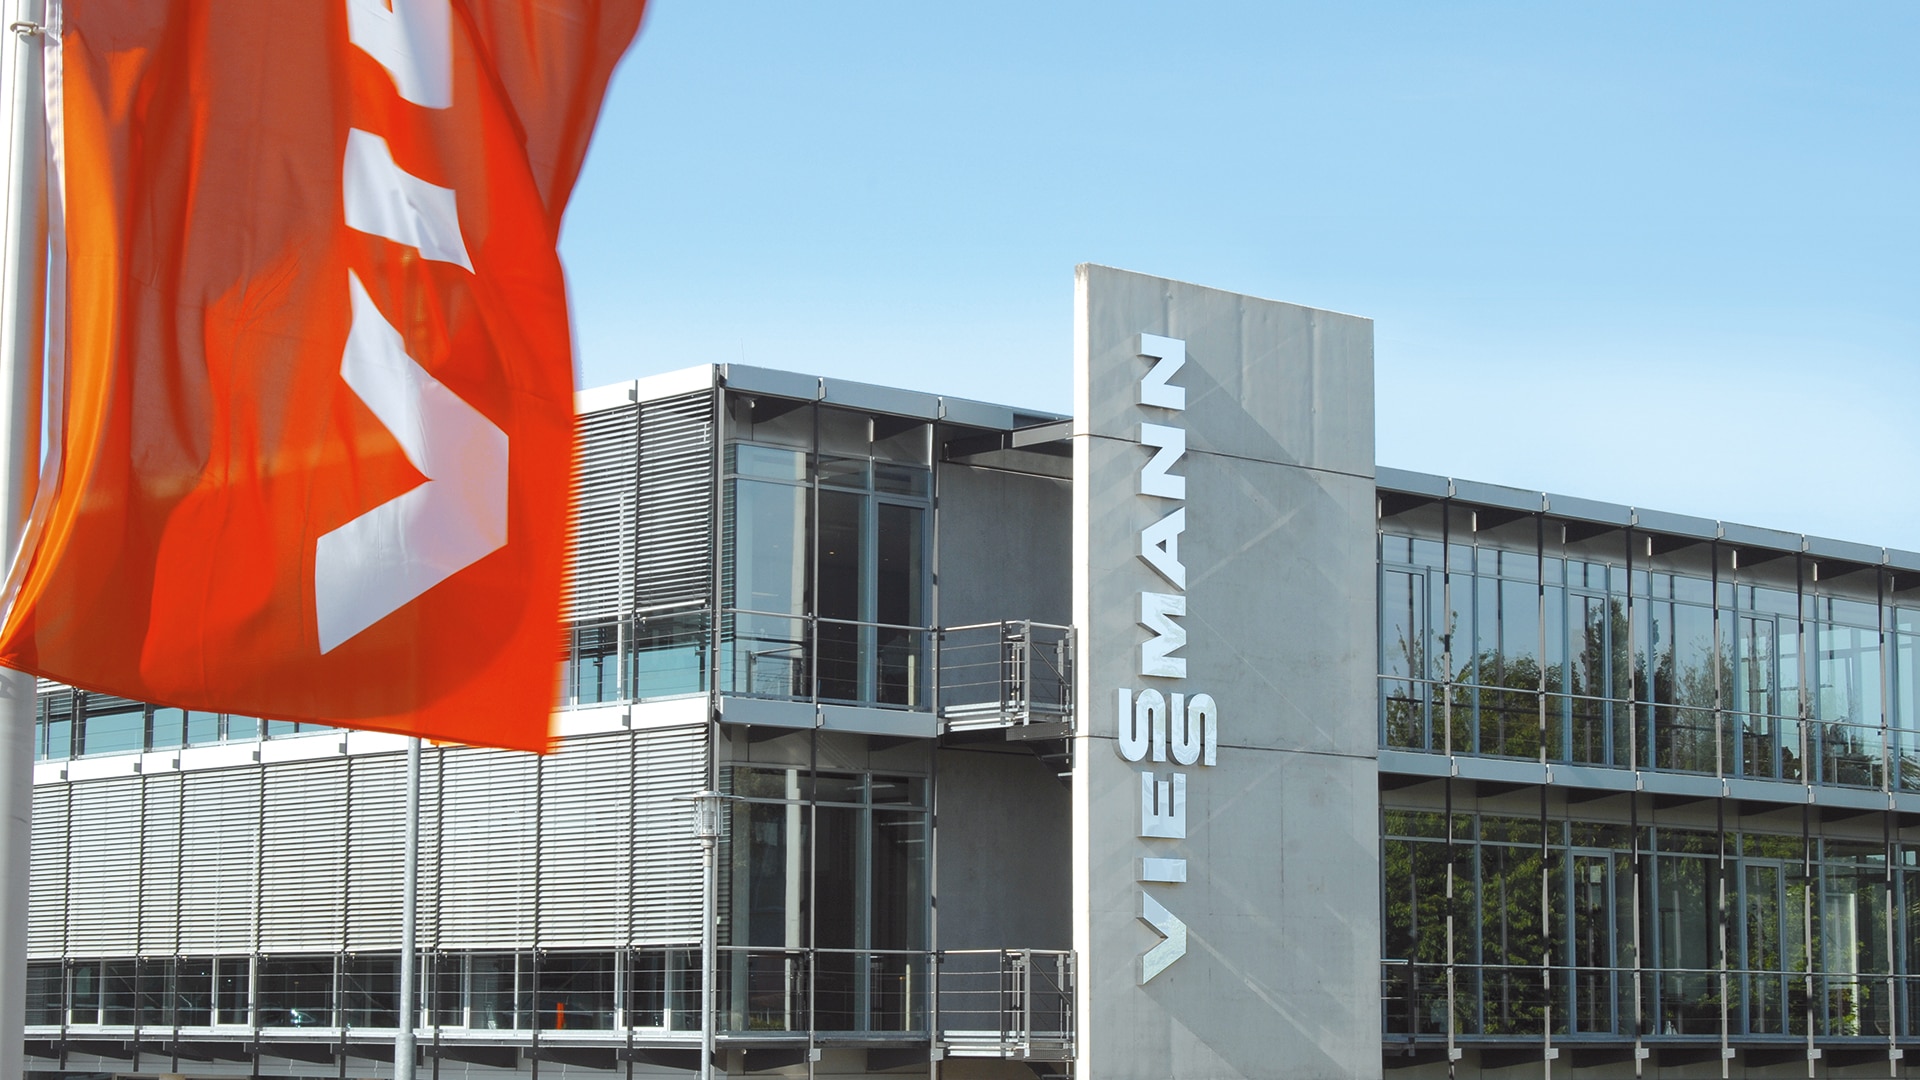 Hình ảnh toàn cảnh bên ngoài trụ sở chính của công ty Viessmann tại Allendorf (Eder).